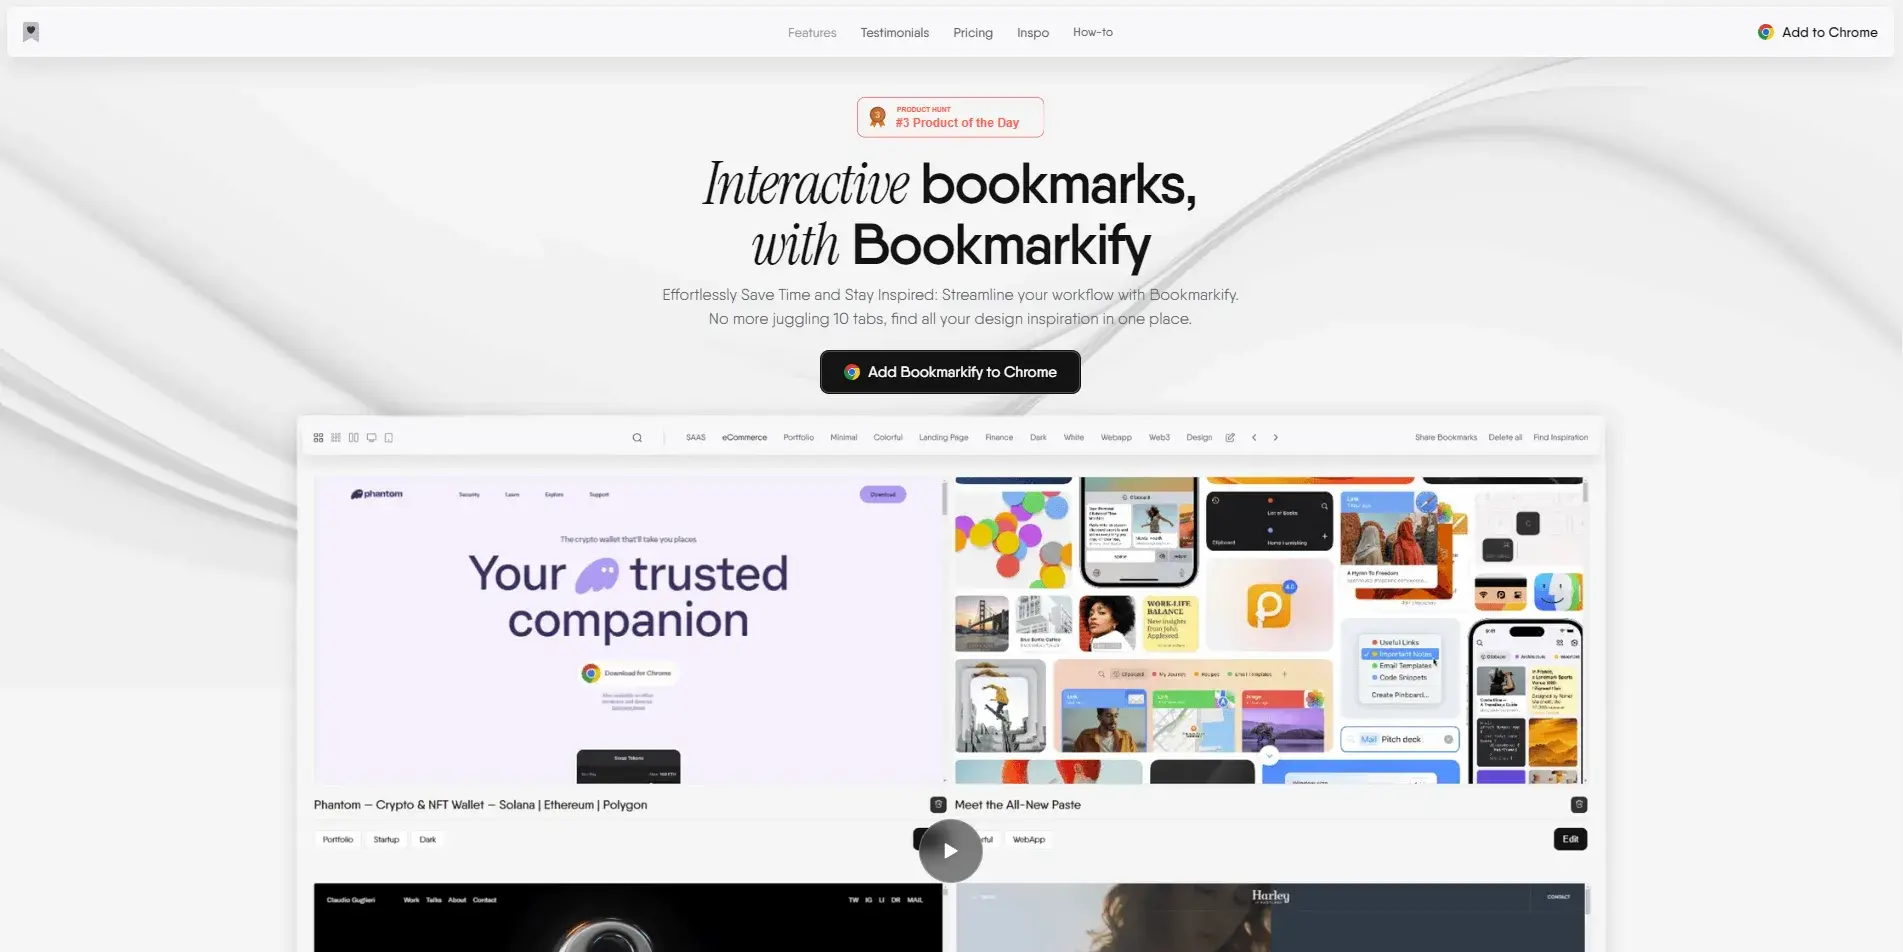 Blogduwebdesign outils productivite bookmarking bookmarkify